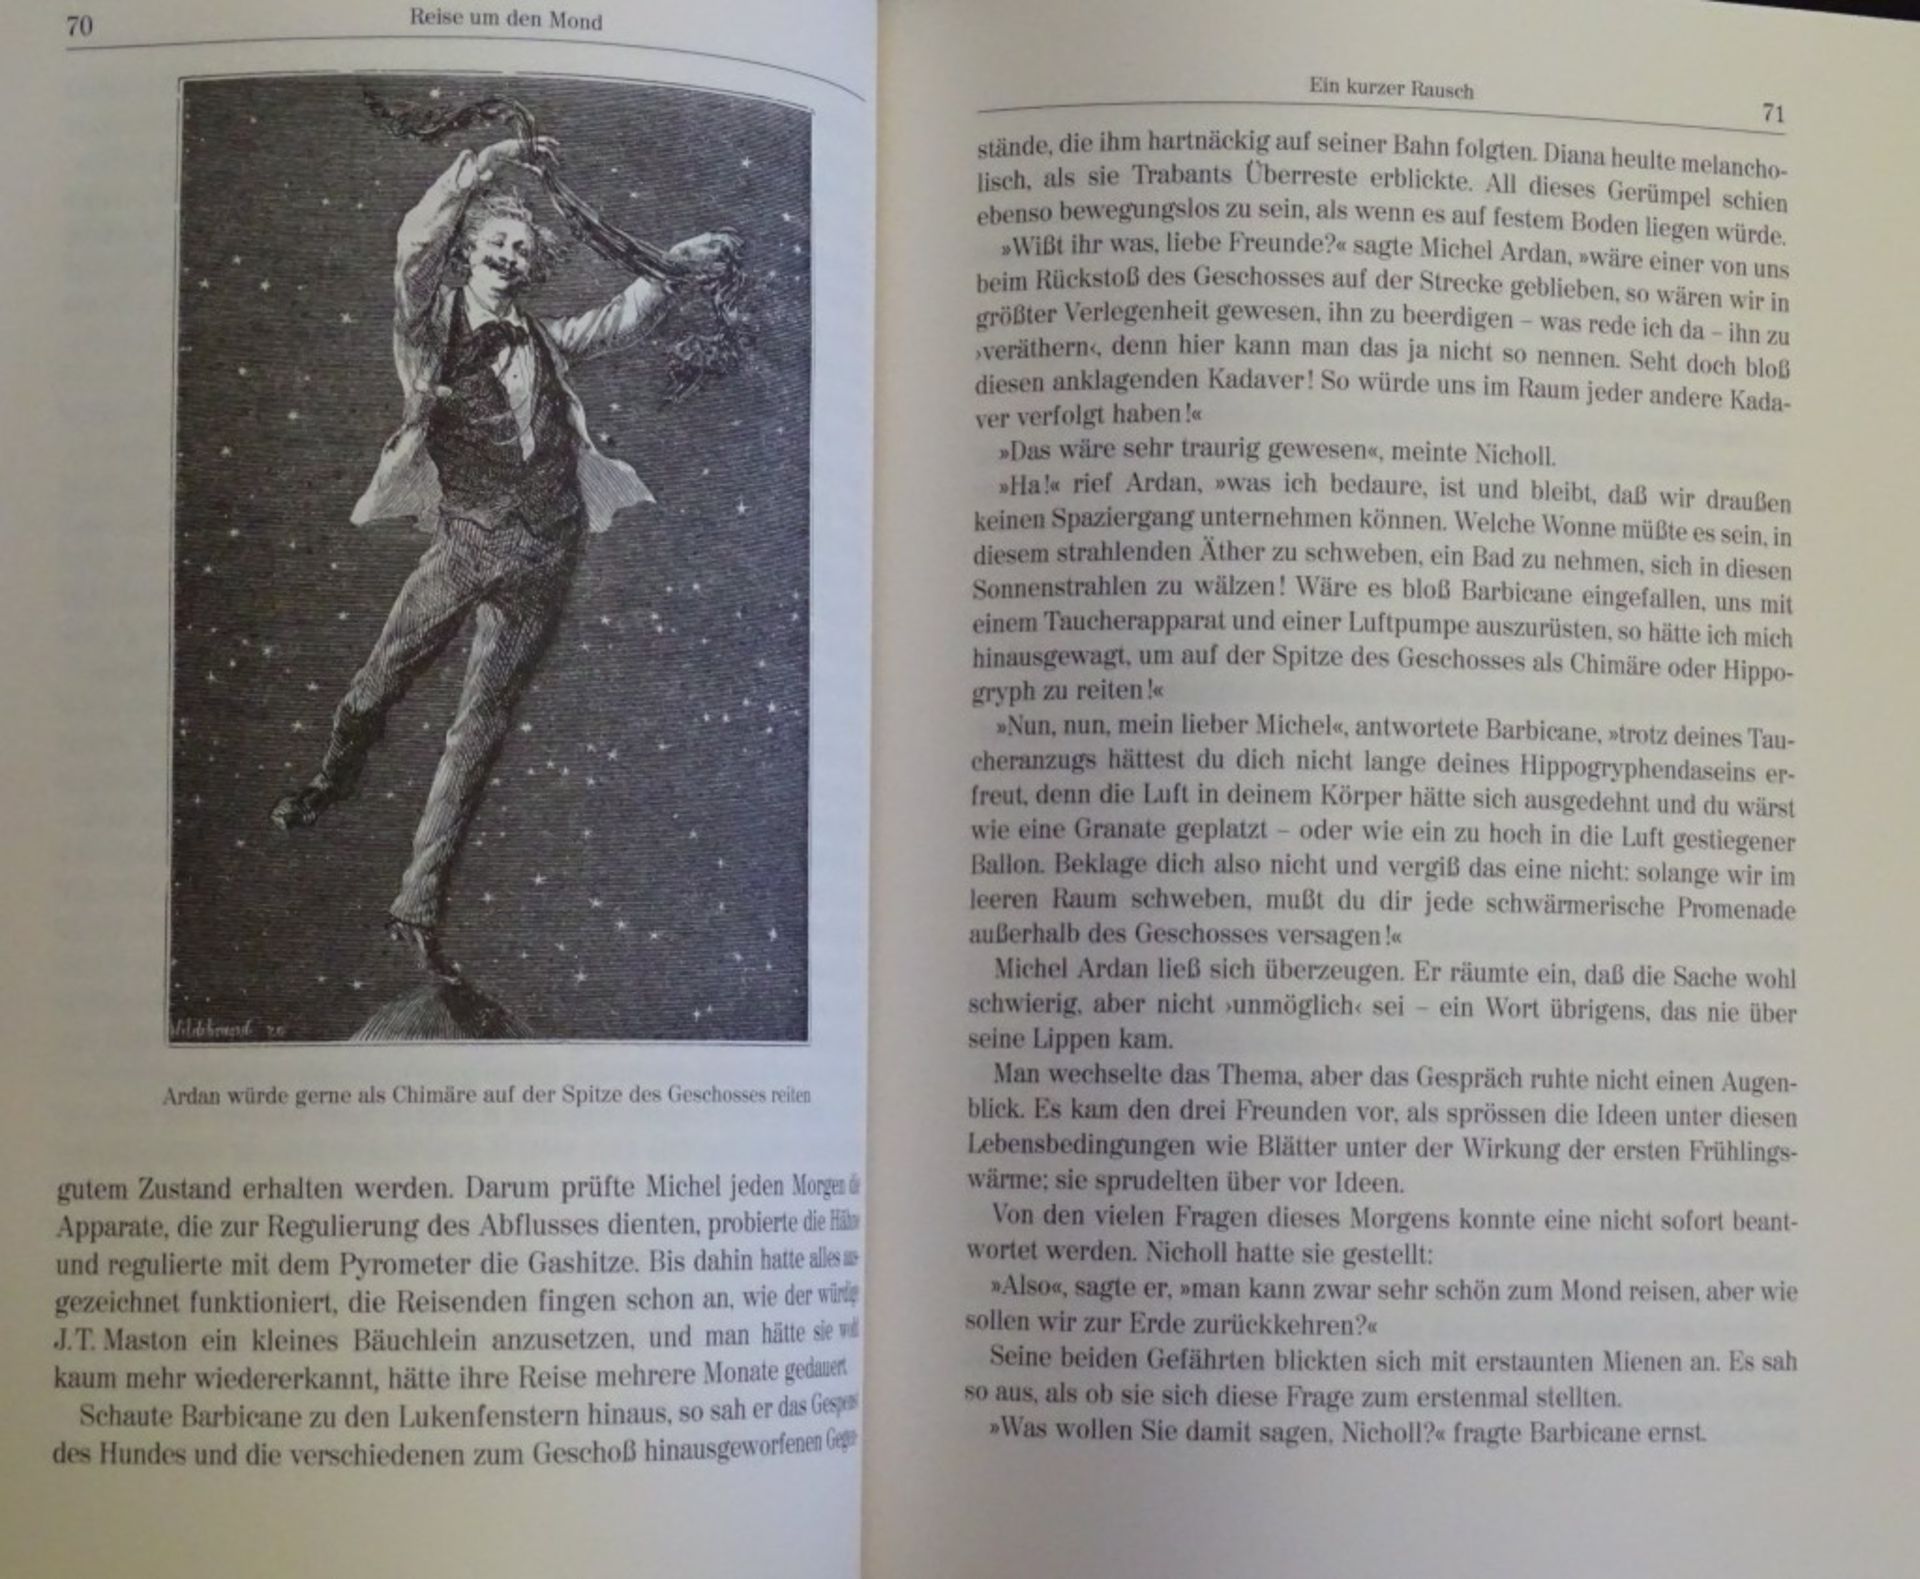 Julius Verne Bücher, "Mathias Sandorf,Reise um den Mond,die großen Seefahrer - Bild 7 aus 10